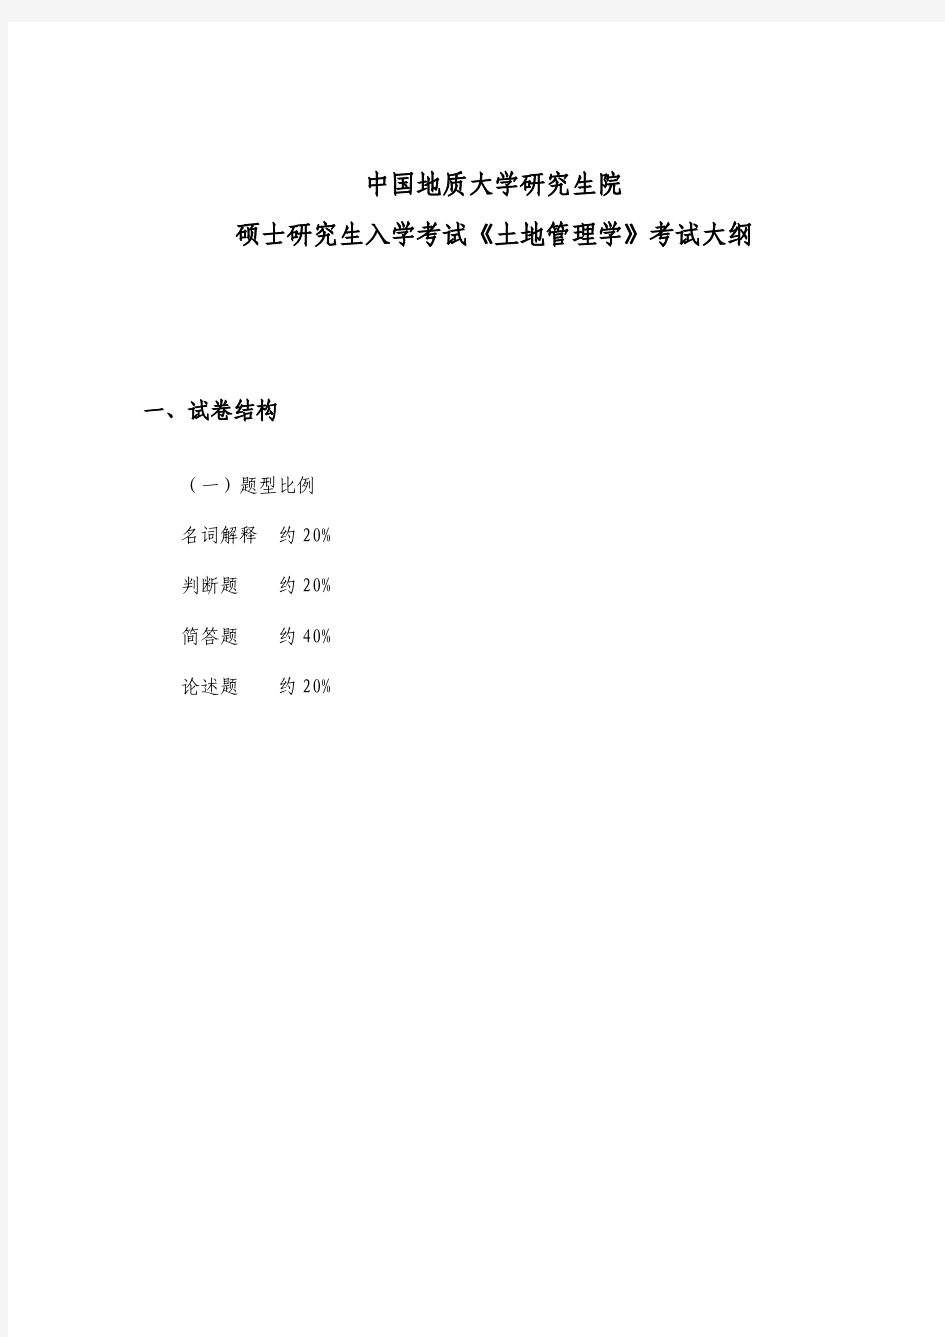 中国地质大学(武汉)土地资源管理考研考试大纲(最新)